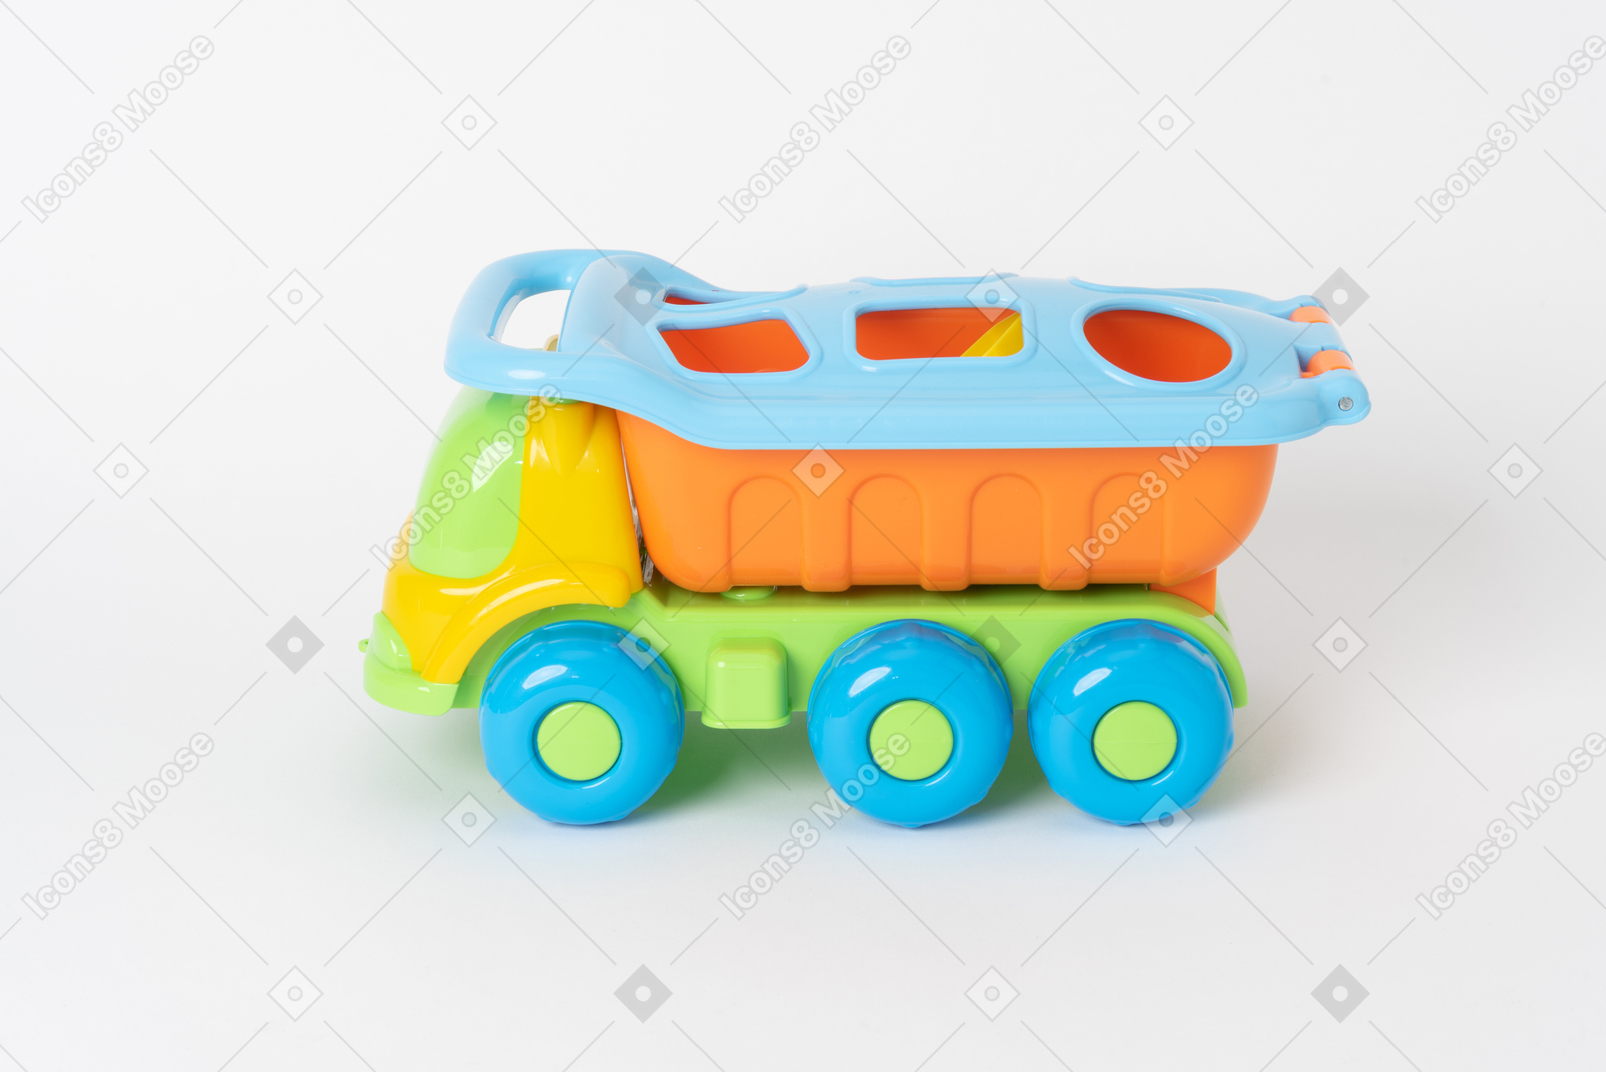 Un camion à benne basculante jouet coloré debout contre un fond blanc